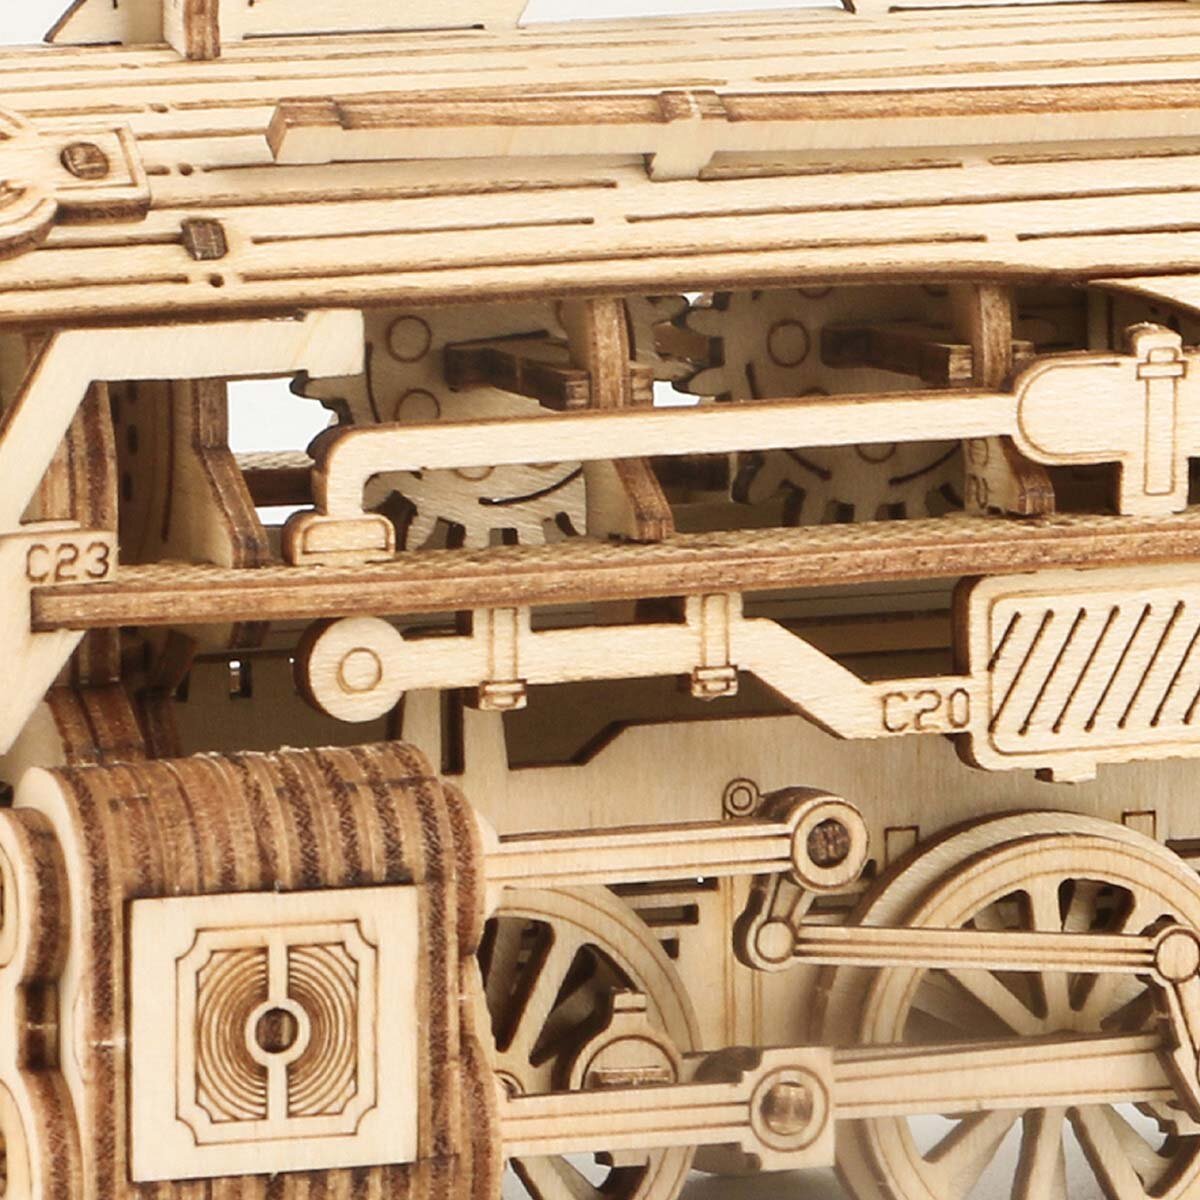 Puzzle 3D en bois - Maquette locomotive à vapeur ROKR MC501